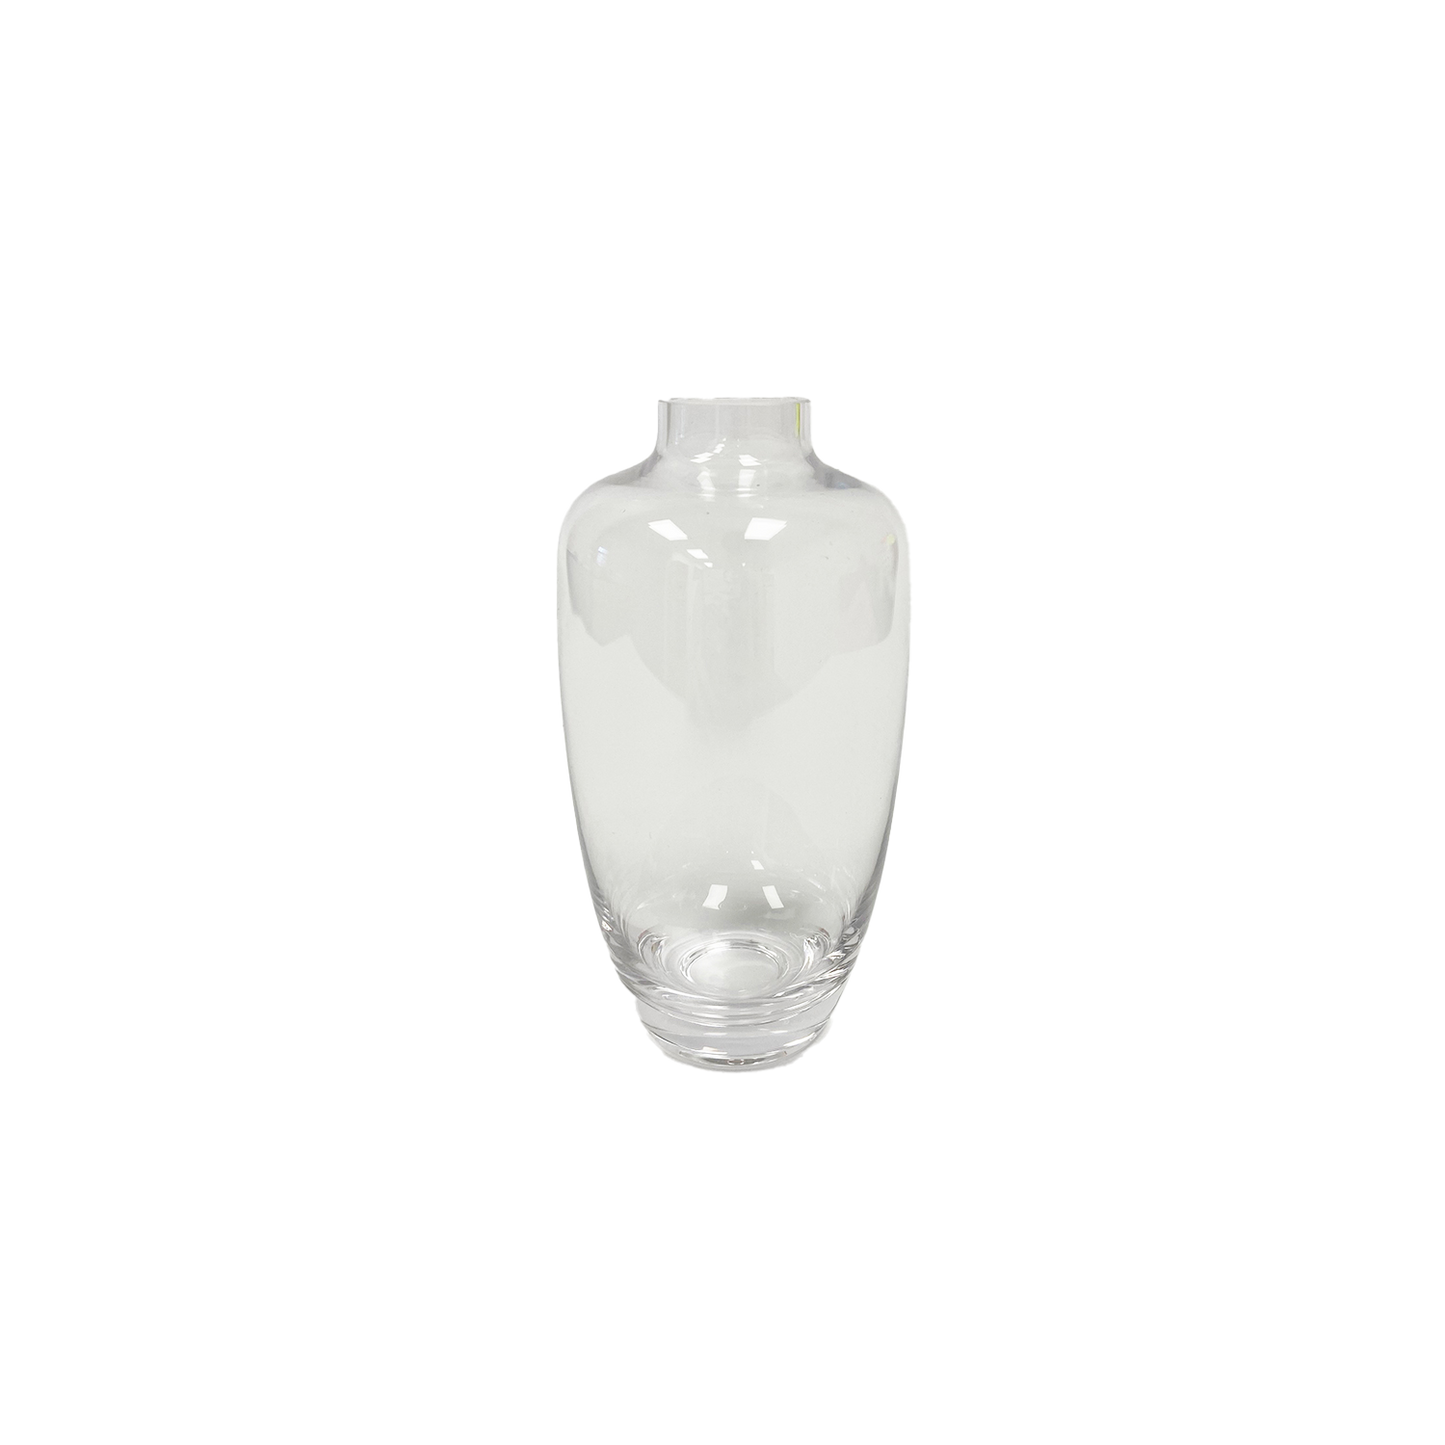 Sophia glass vase 13cm